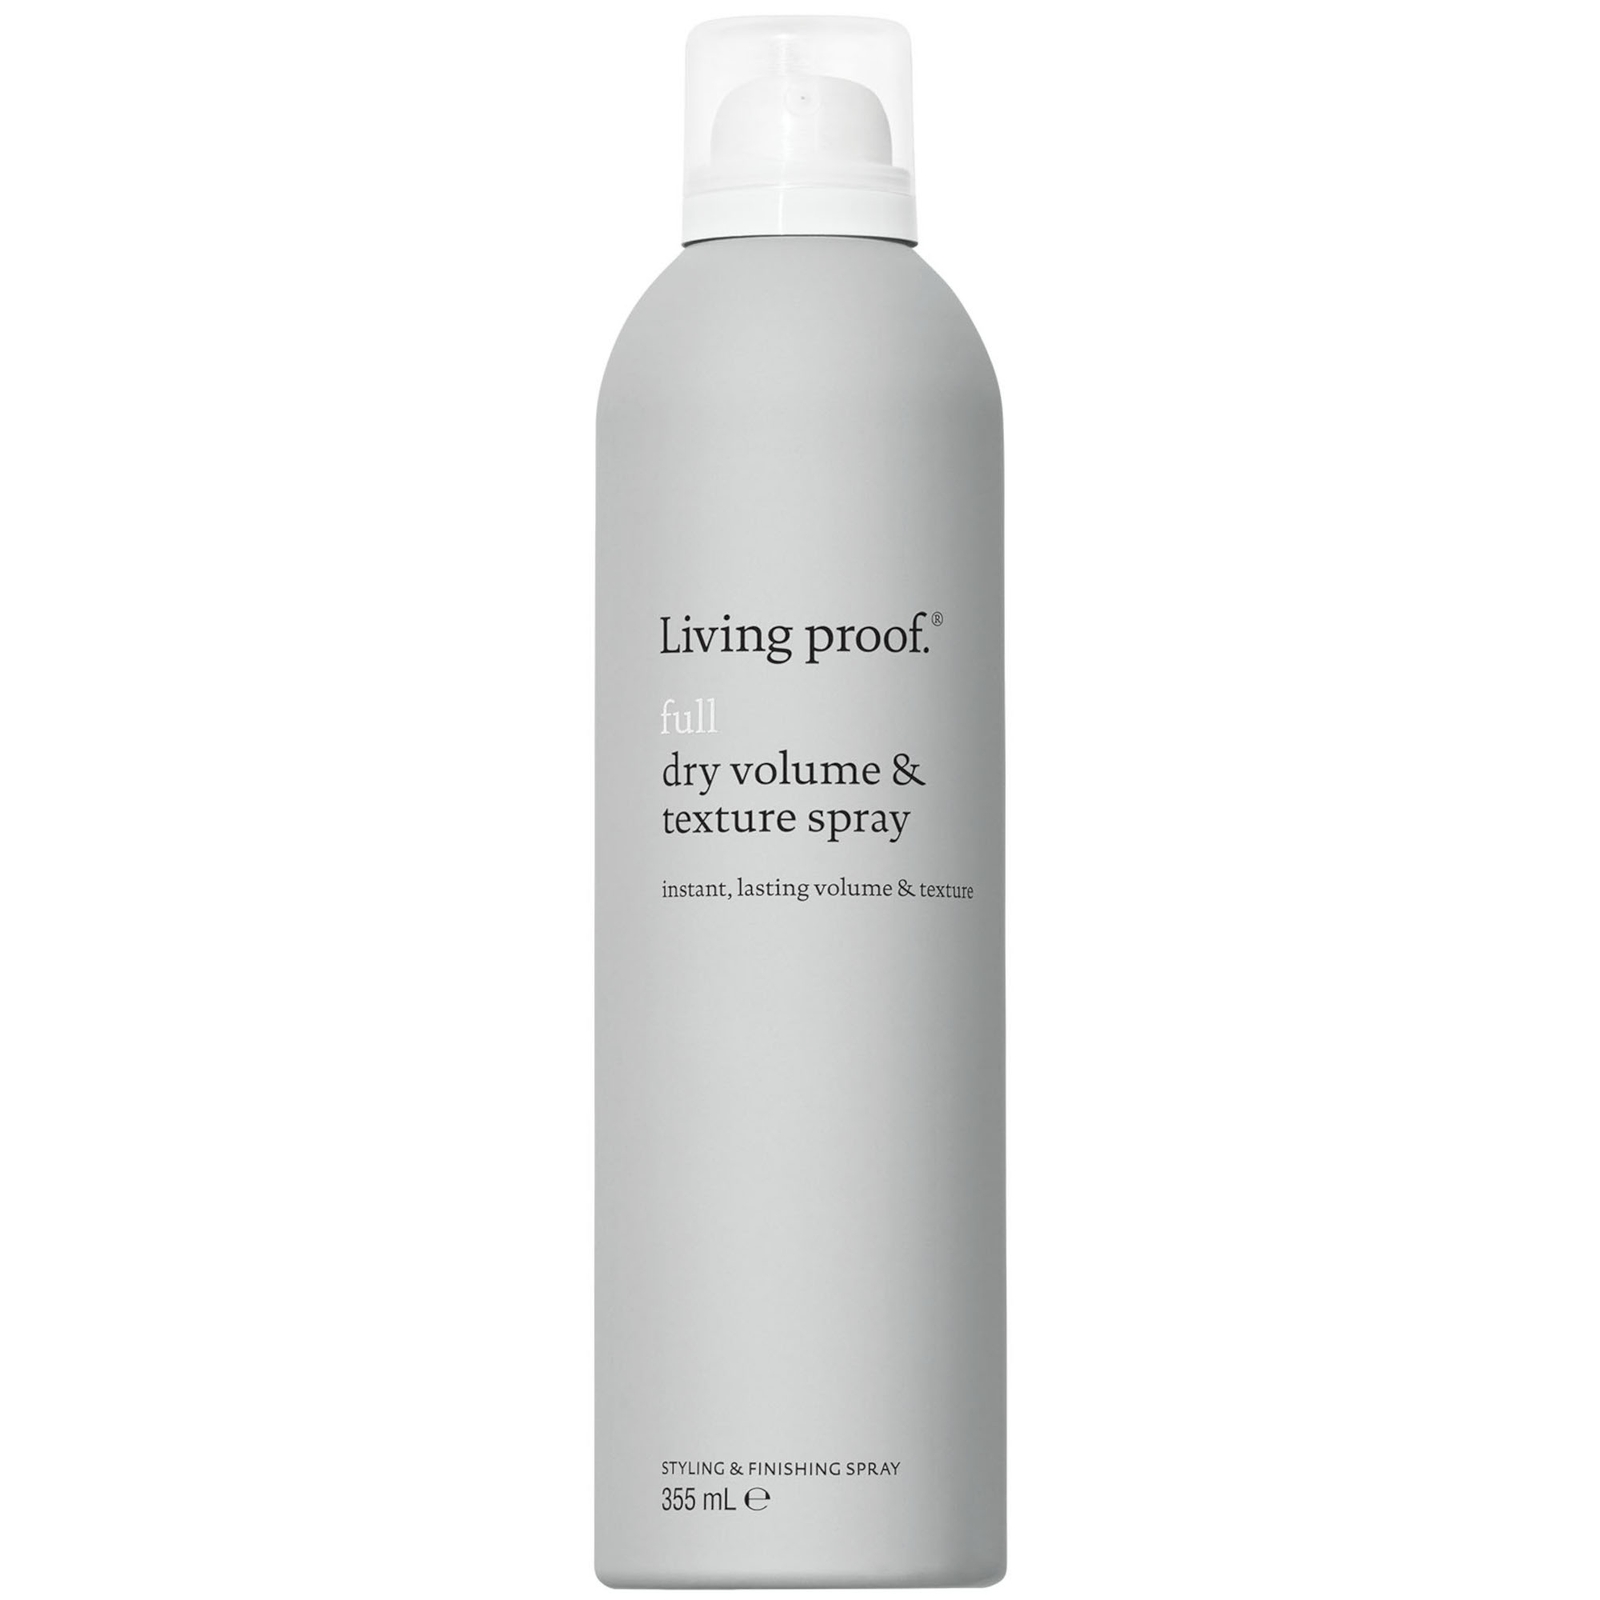 Living Proof Full Dry Volume & Texture Spray Jumbo Size 355ml In White